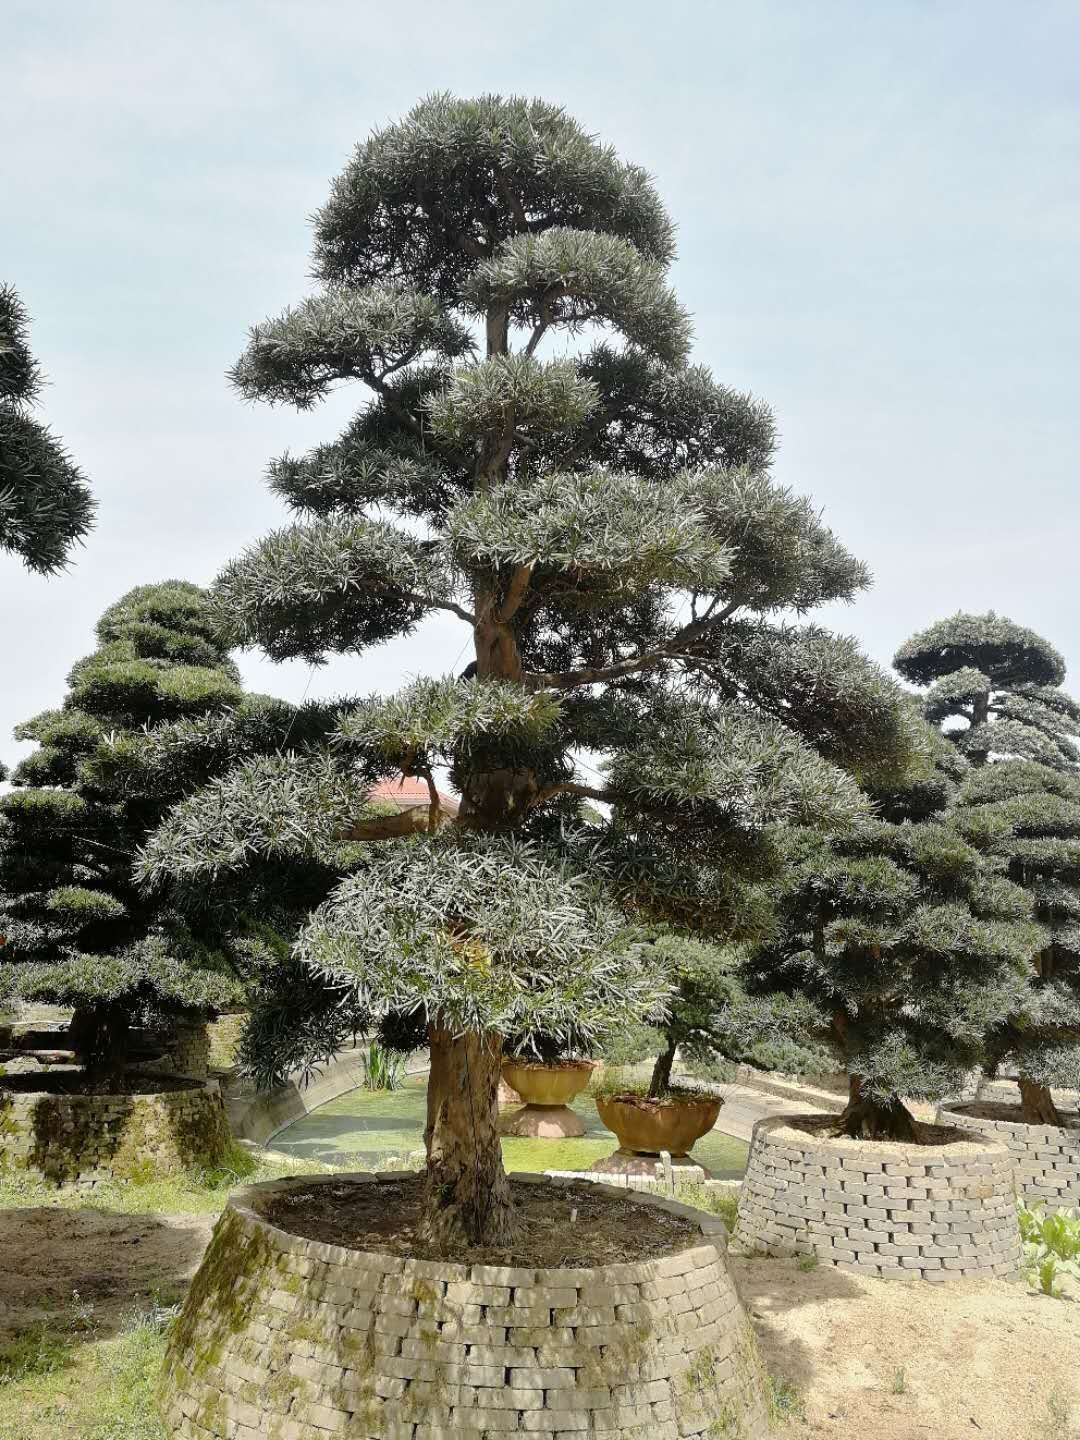 大罗汉松树 罗汉松盆景树桩 优质日本罗汉松 多规格货源充足示例图8